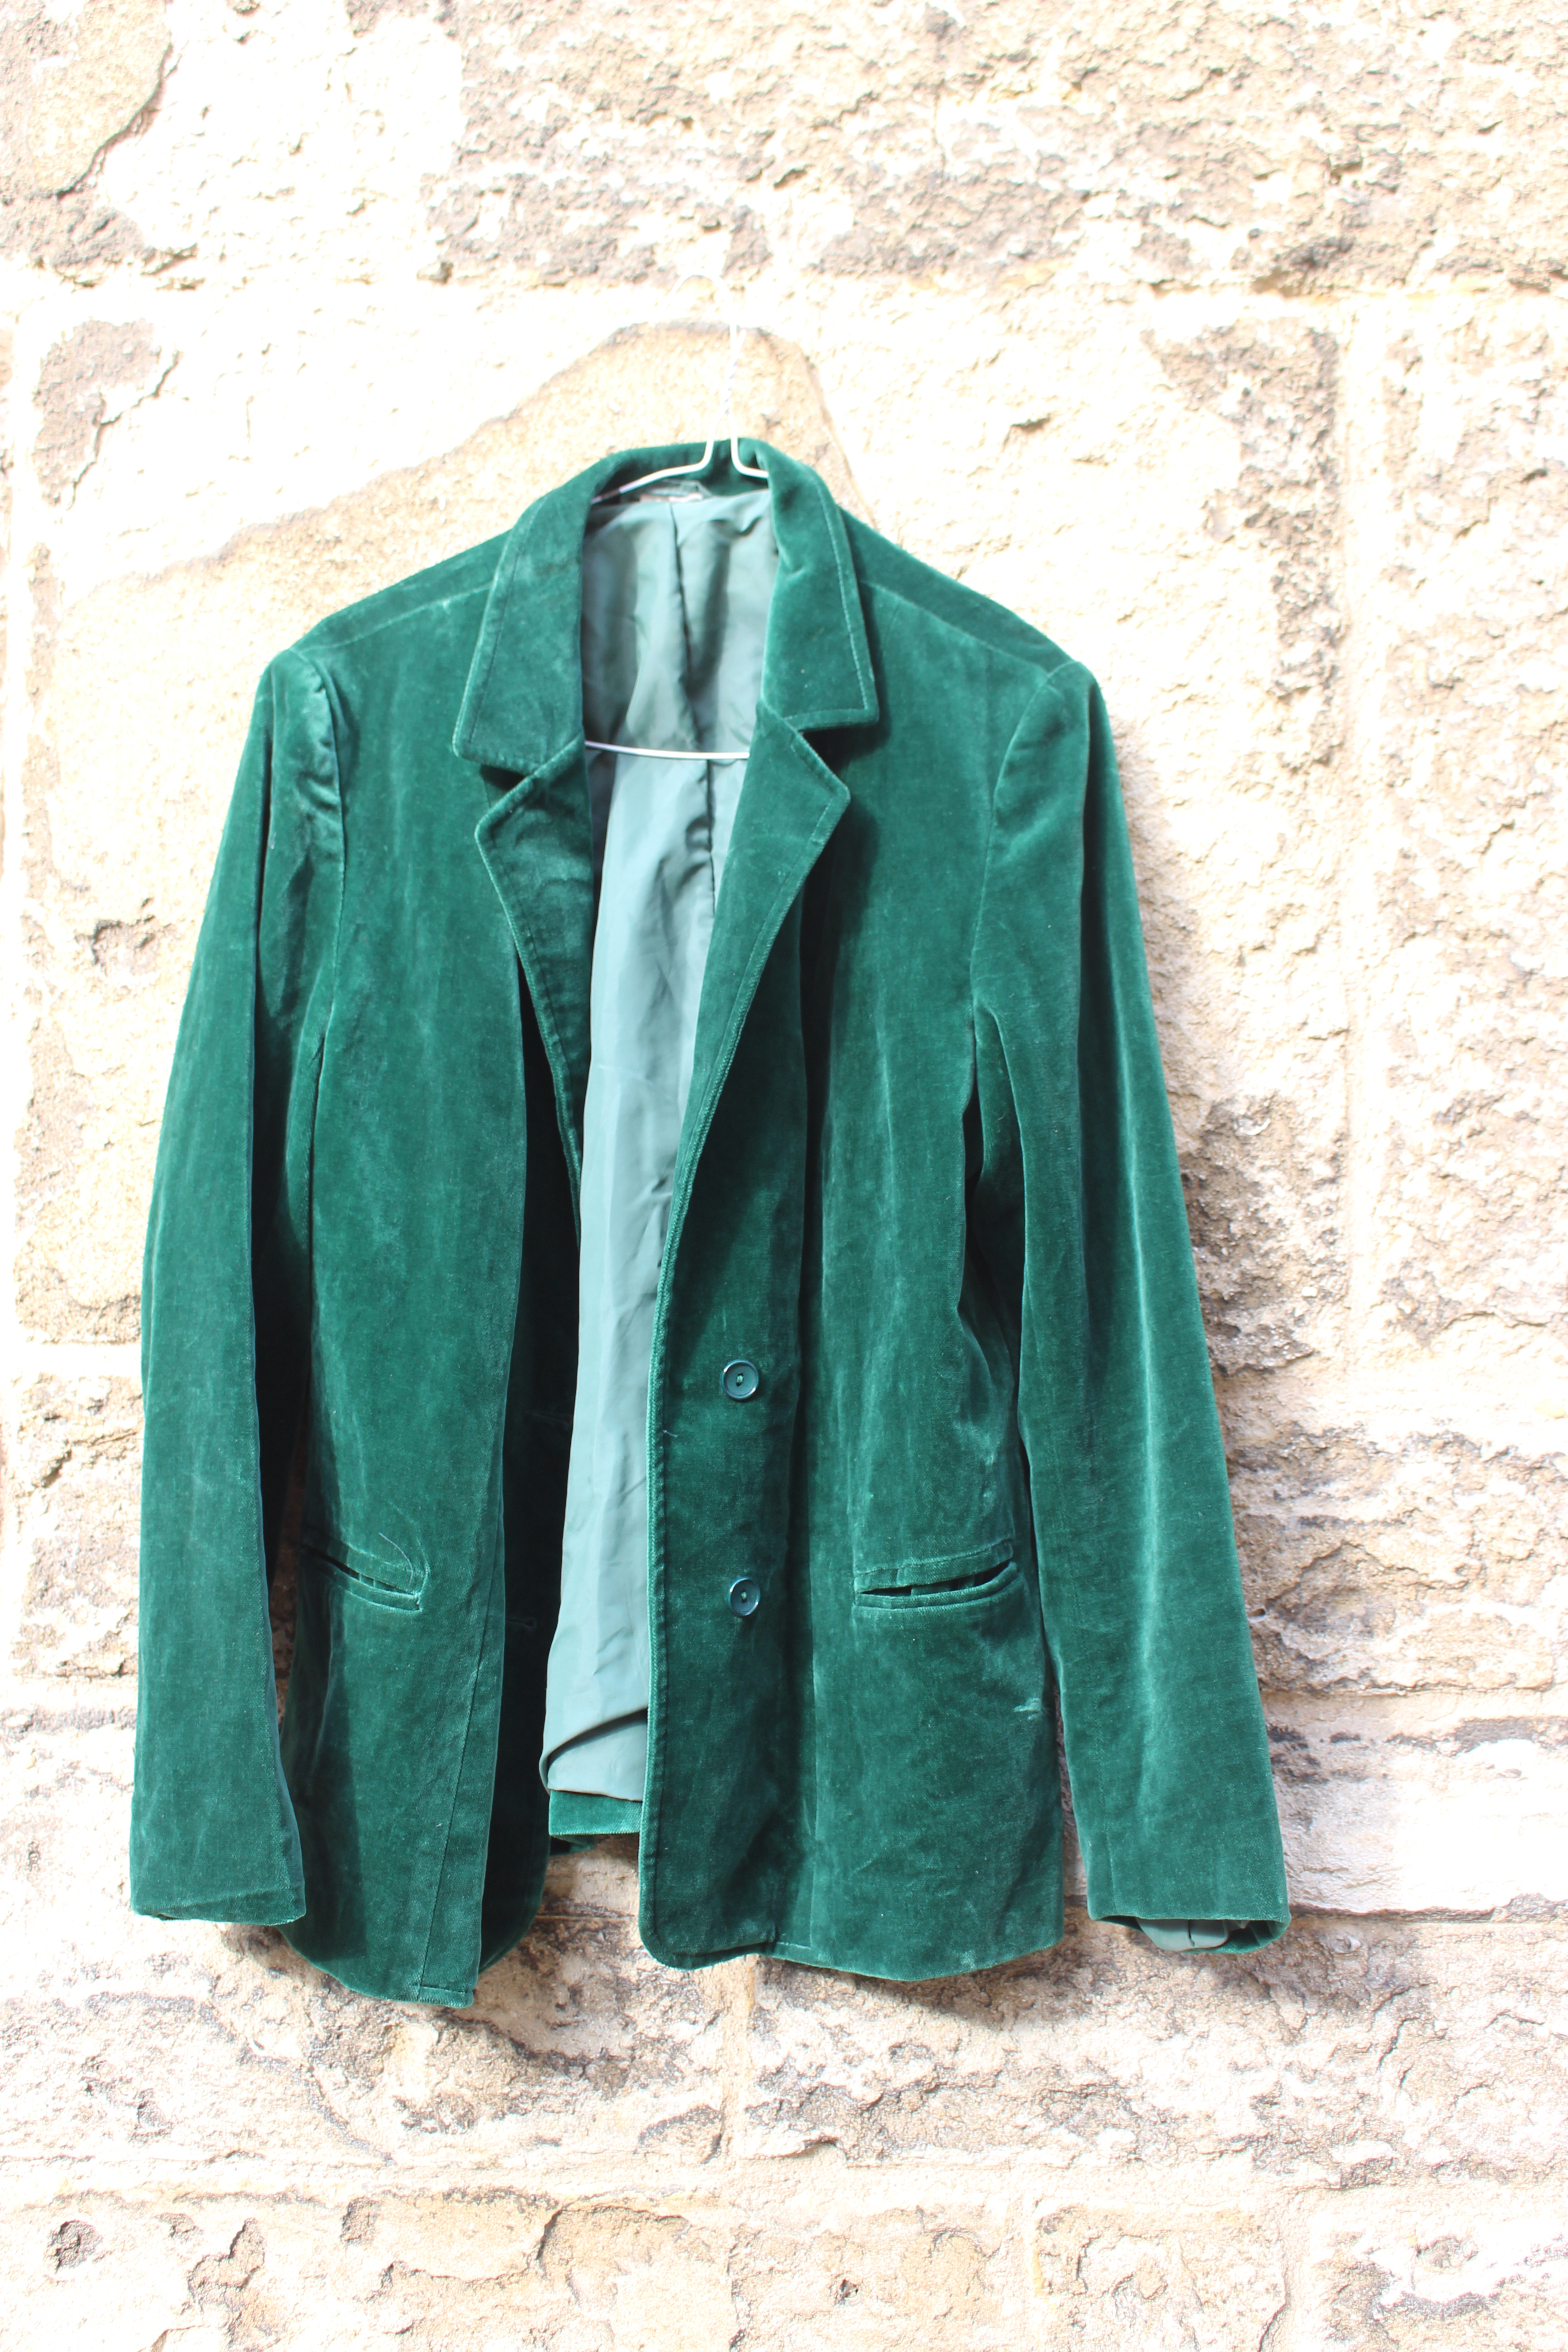 Soft green velvet jacket, from Unicorn, 5 Ship Street, Oxford